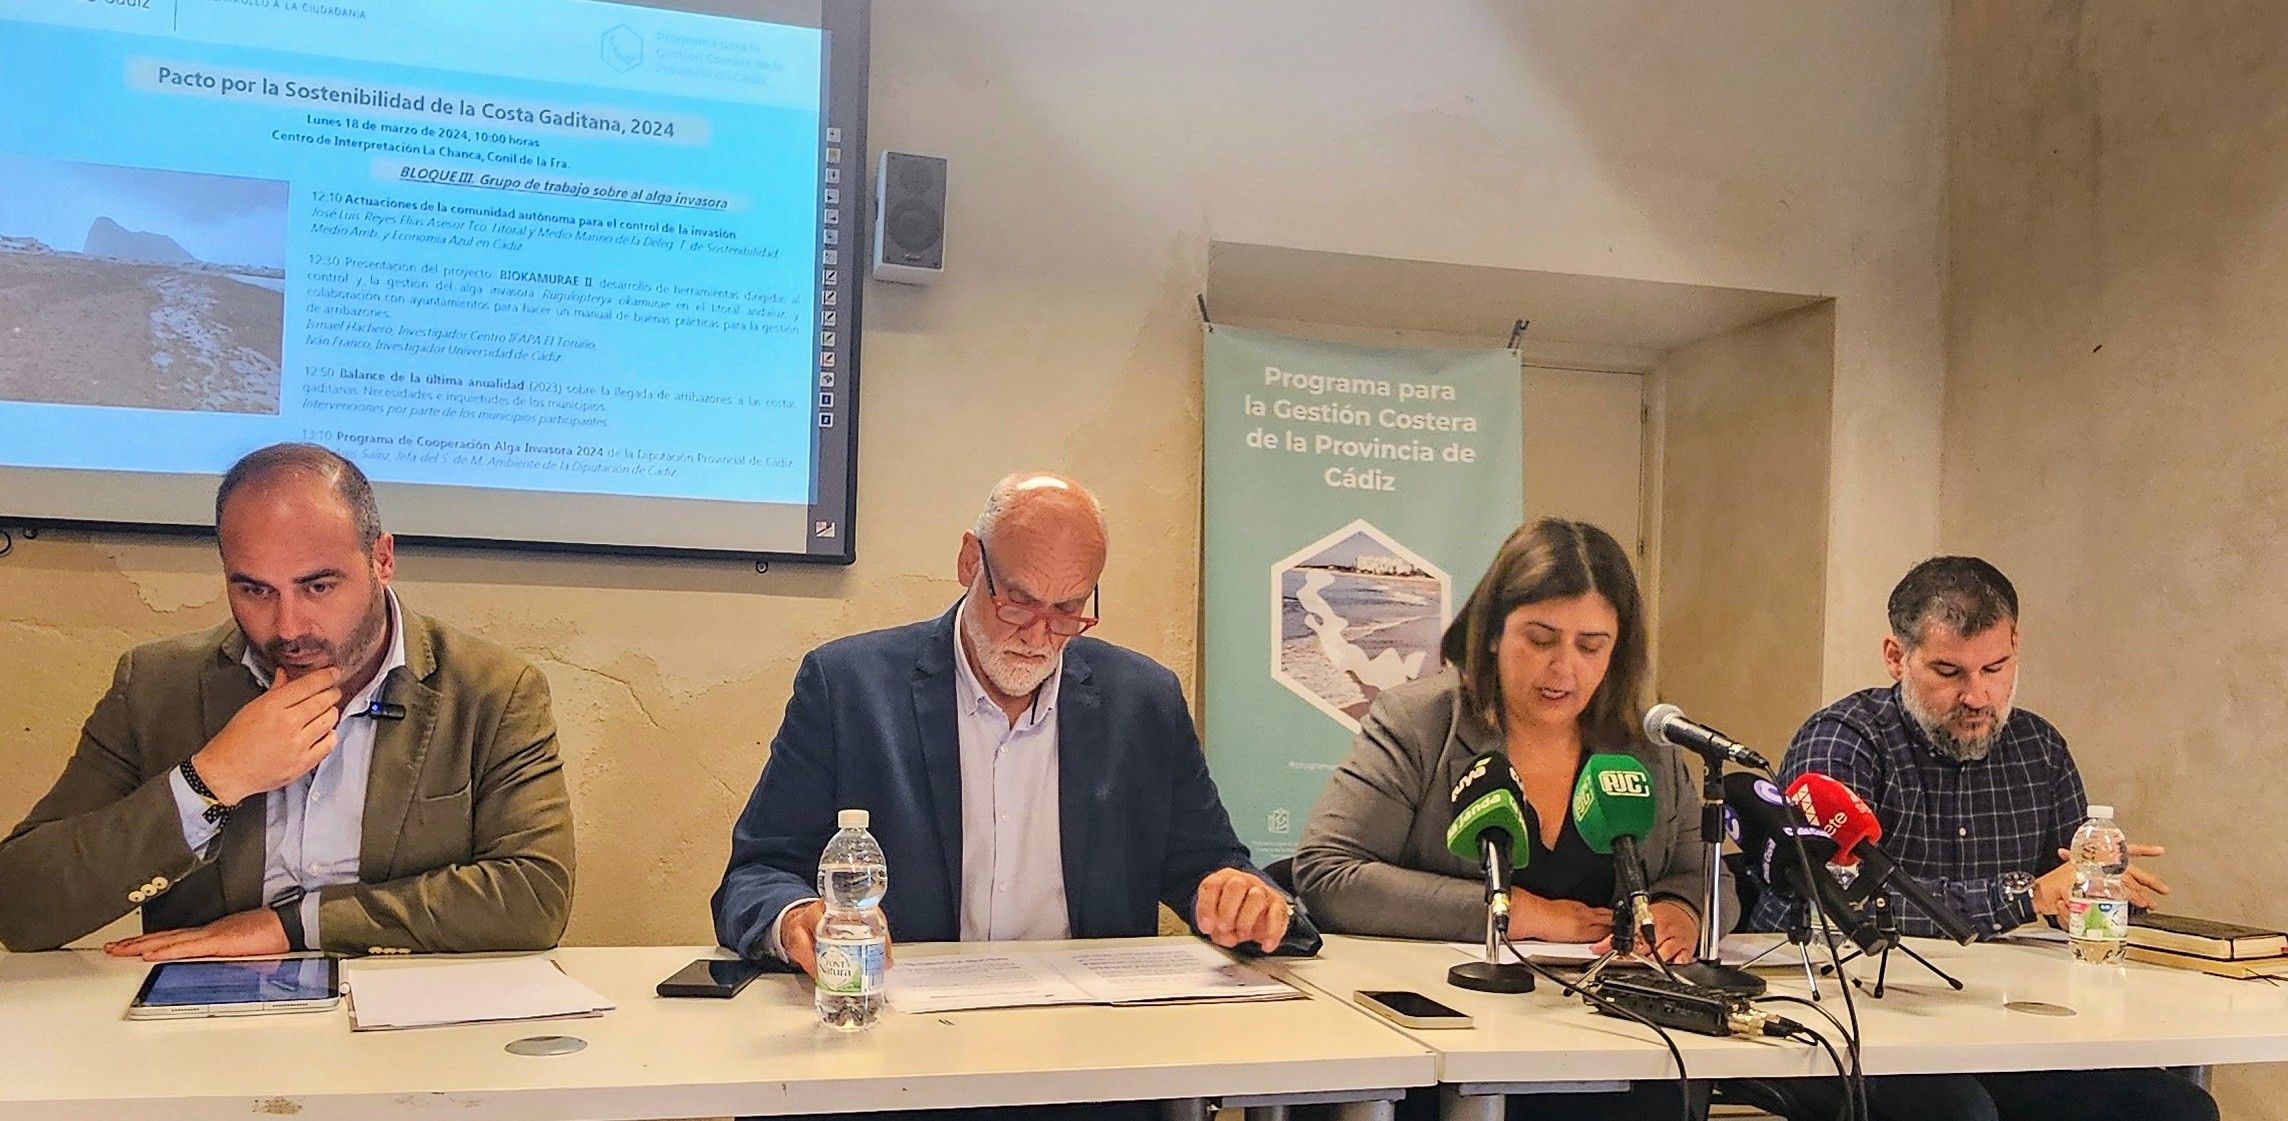 Encuentro Pacto por la Sostenibilidad de la Costa Gaditana, convocado por la Diputación de Cádiz en Conil.